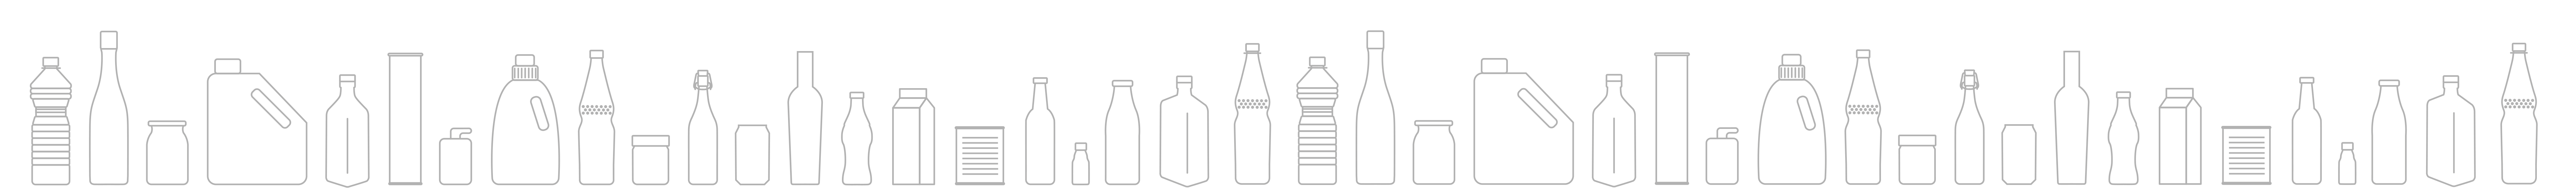 fries Zeichnungen aller Flaschen die inspeziert werden können